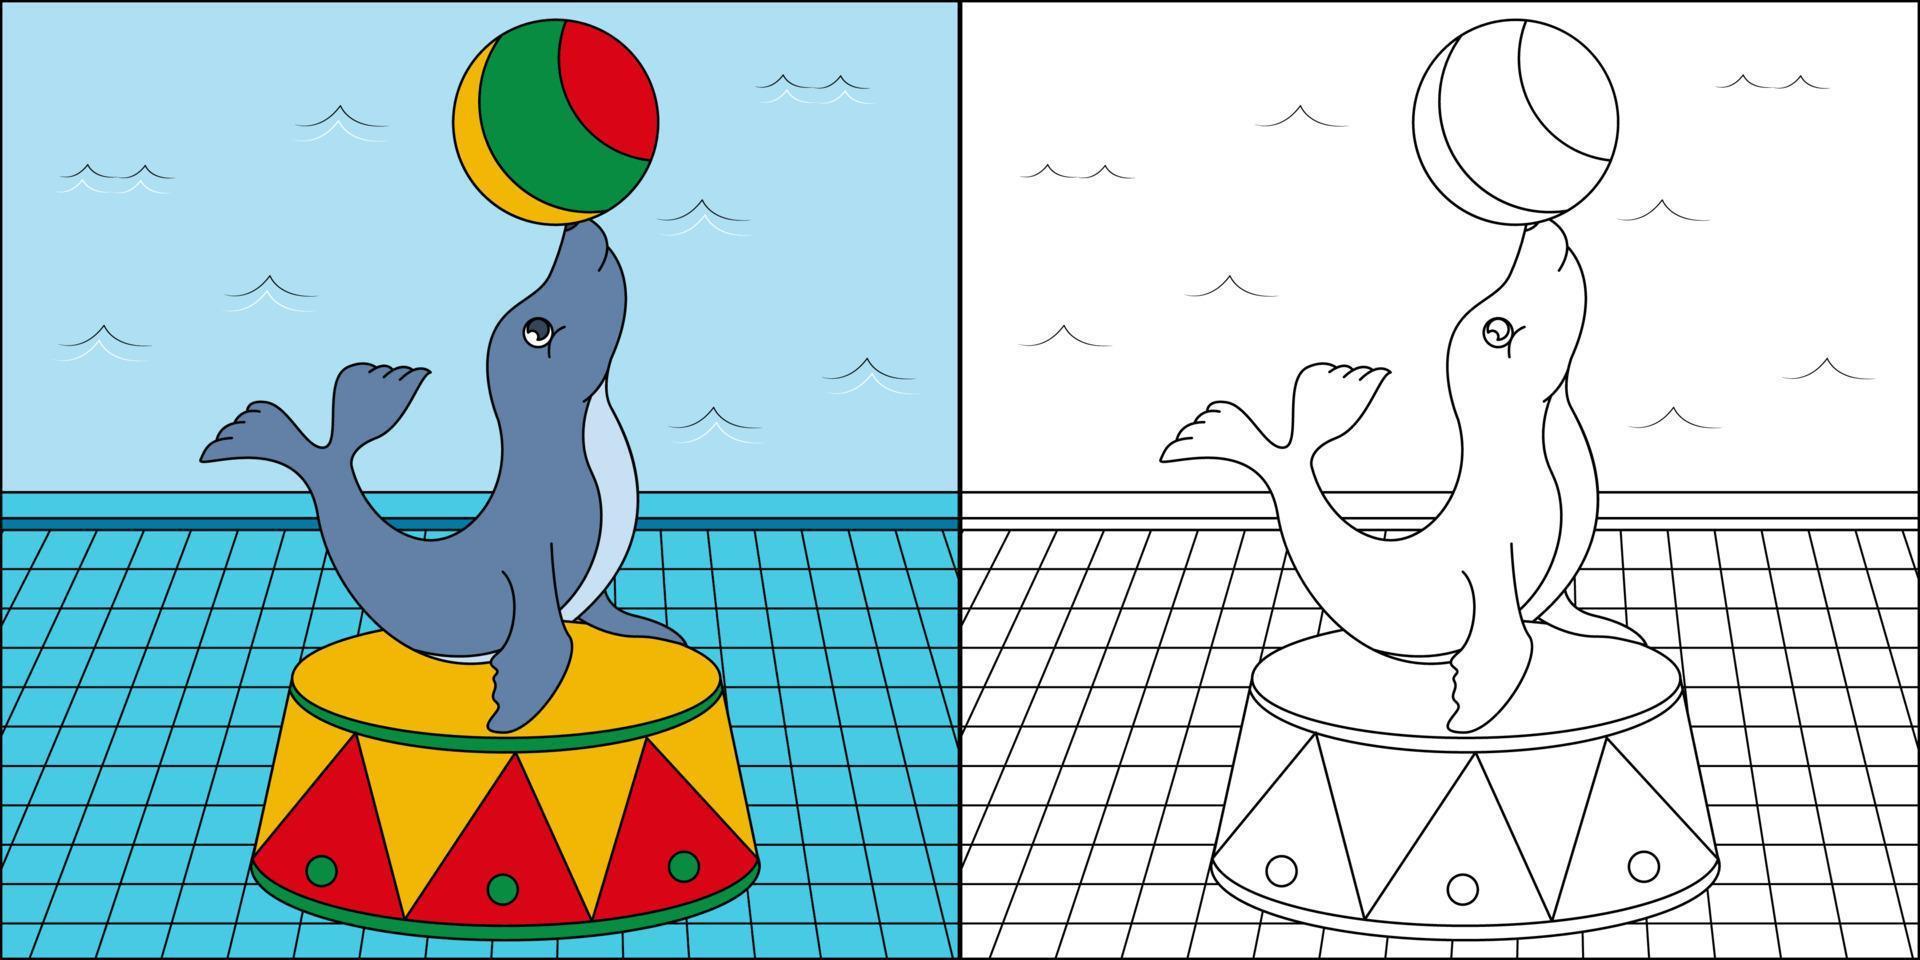 spectacle de cirque de phoque adapté à l'illustration vectorielle de la page de coloriage pour enfants vecteur